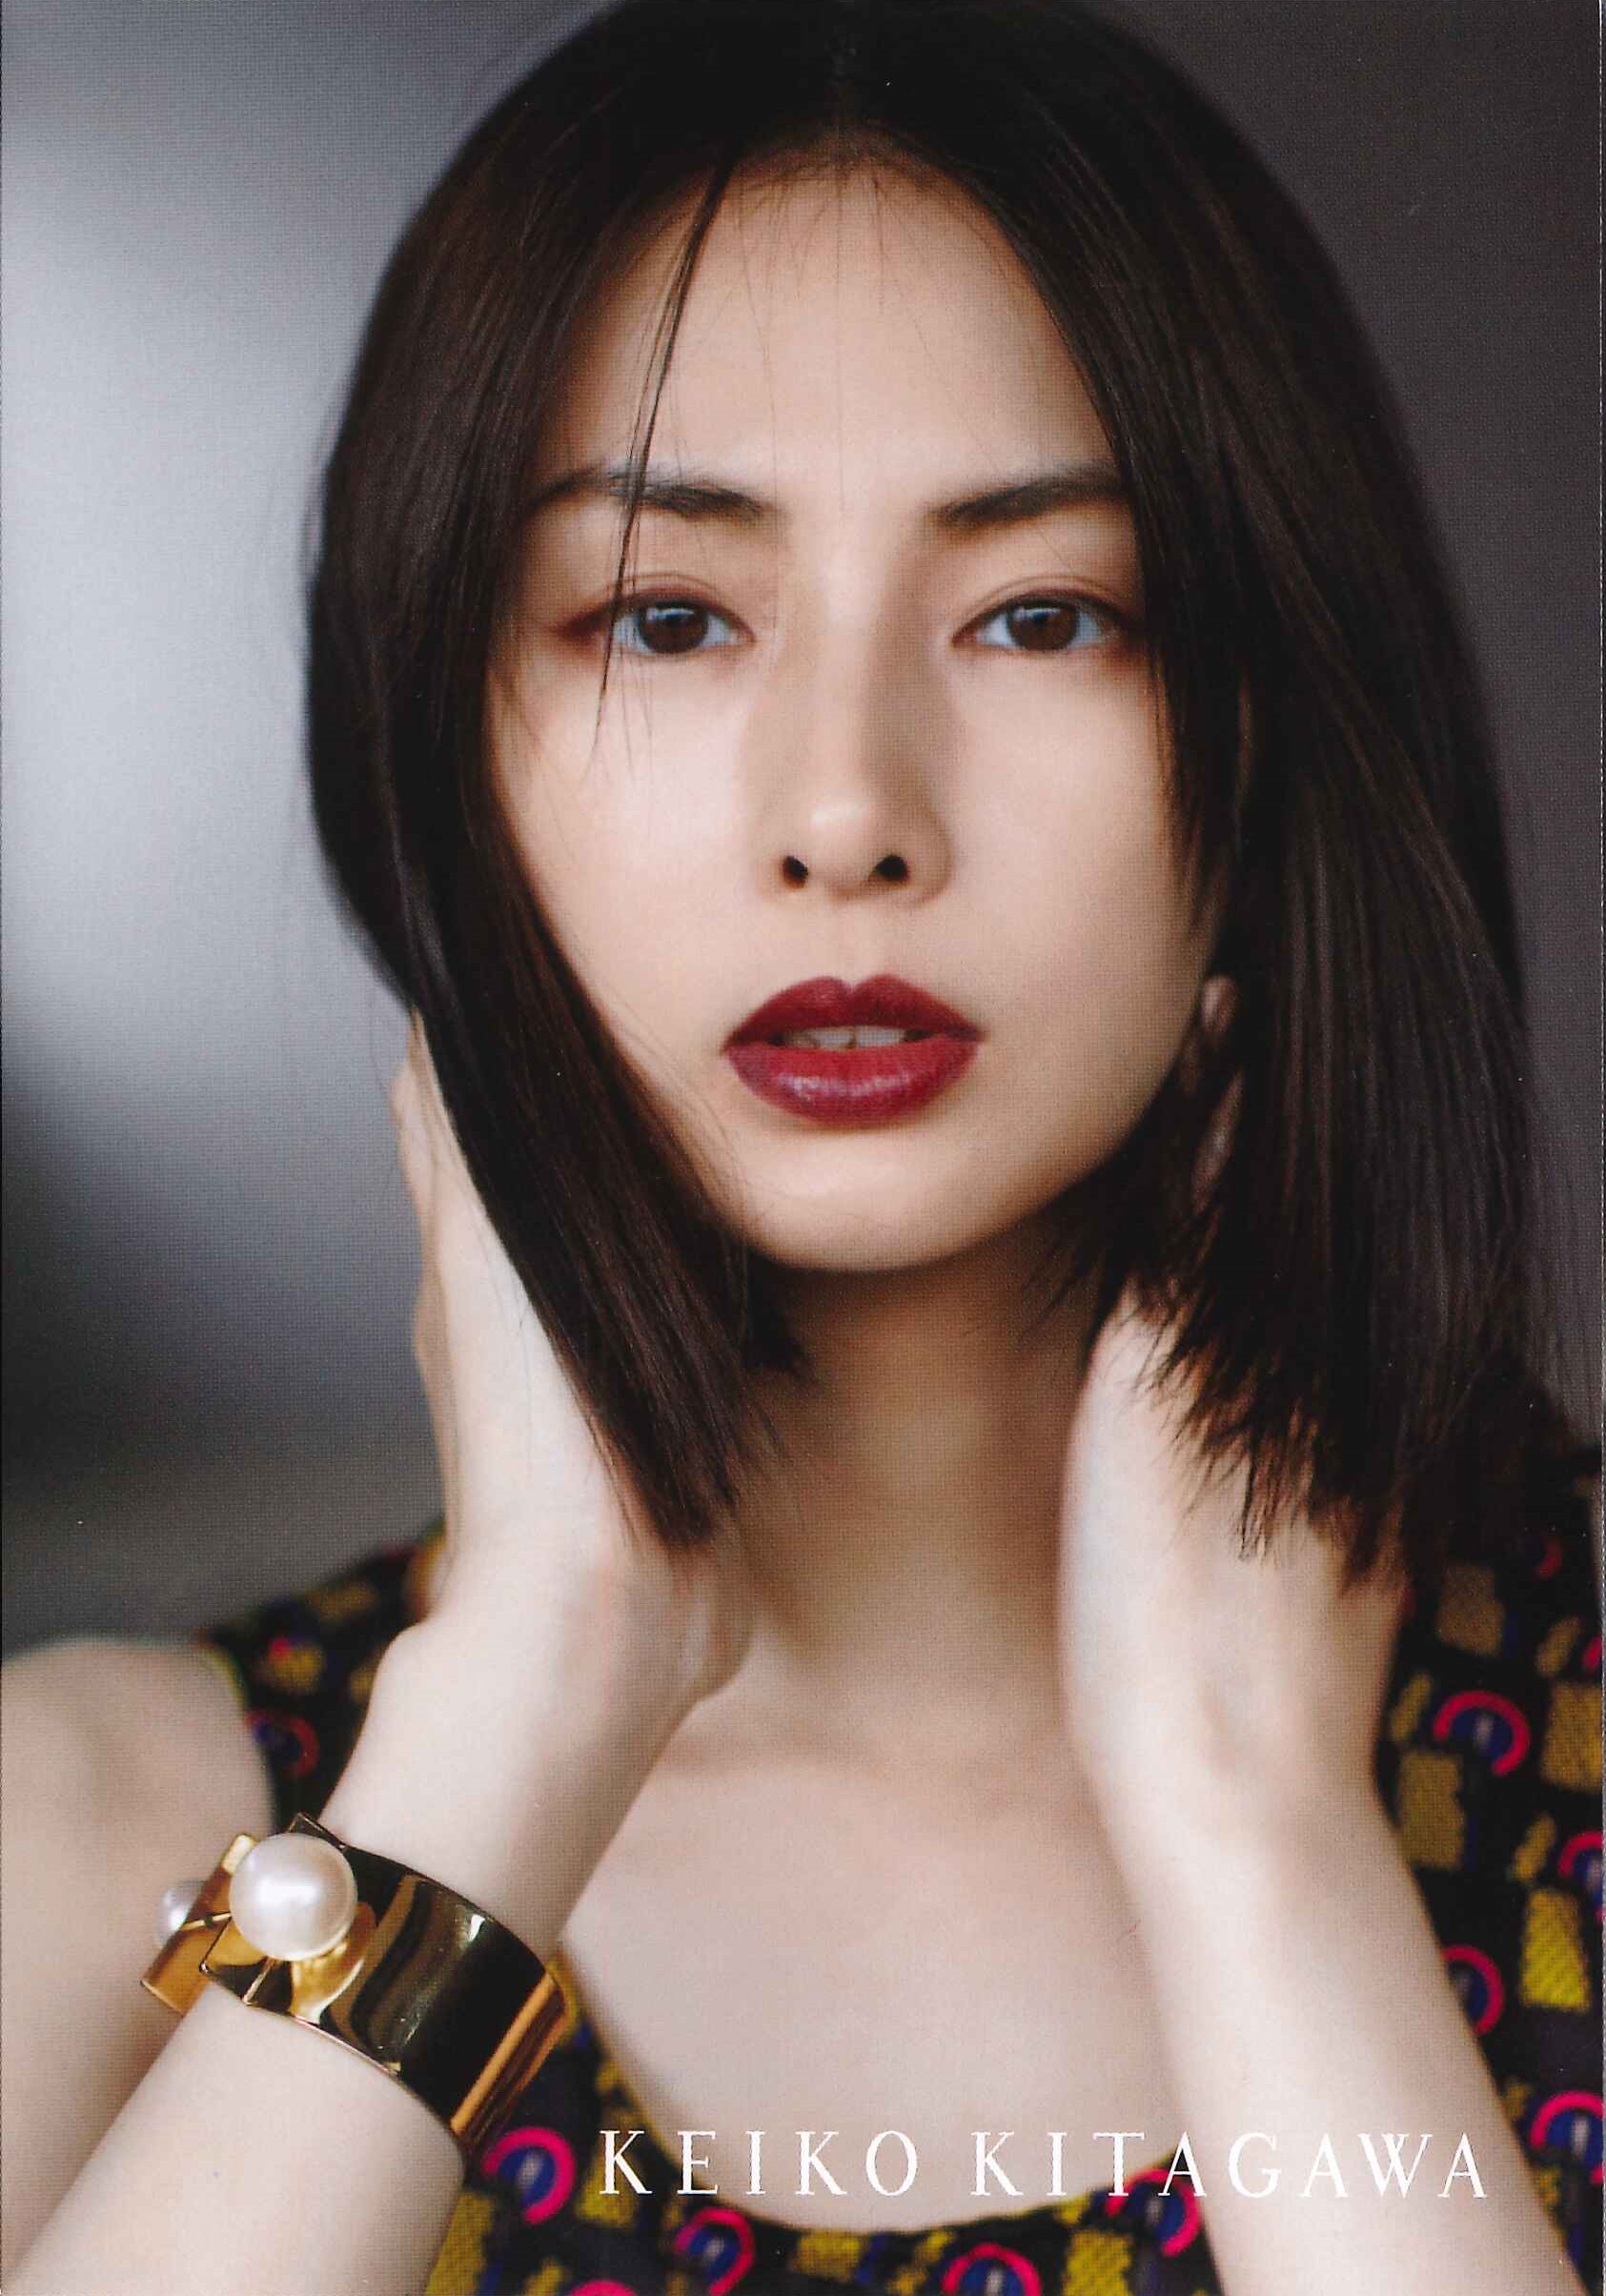 Keiko Kitagawa 2019 calendar photo goods | TAF: apn